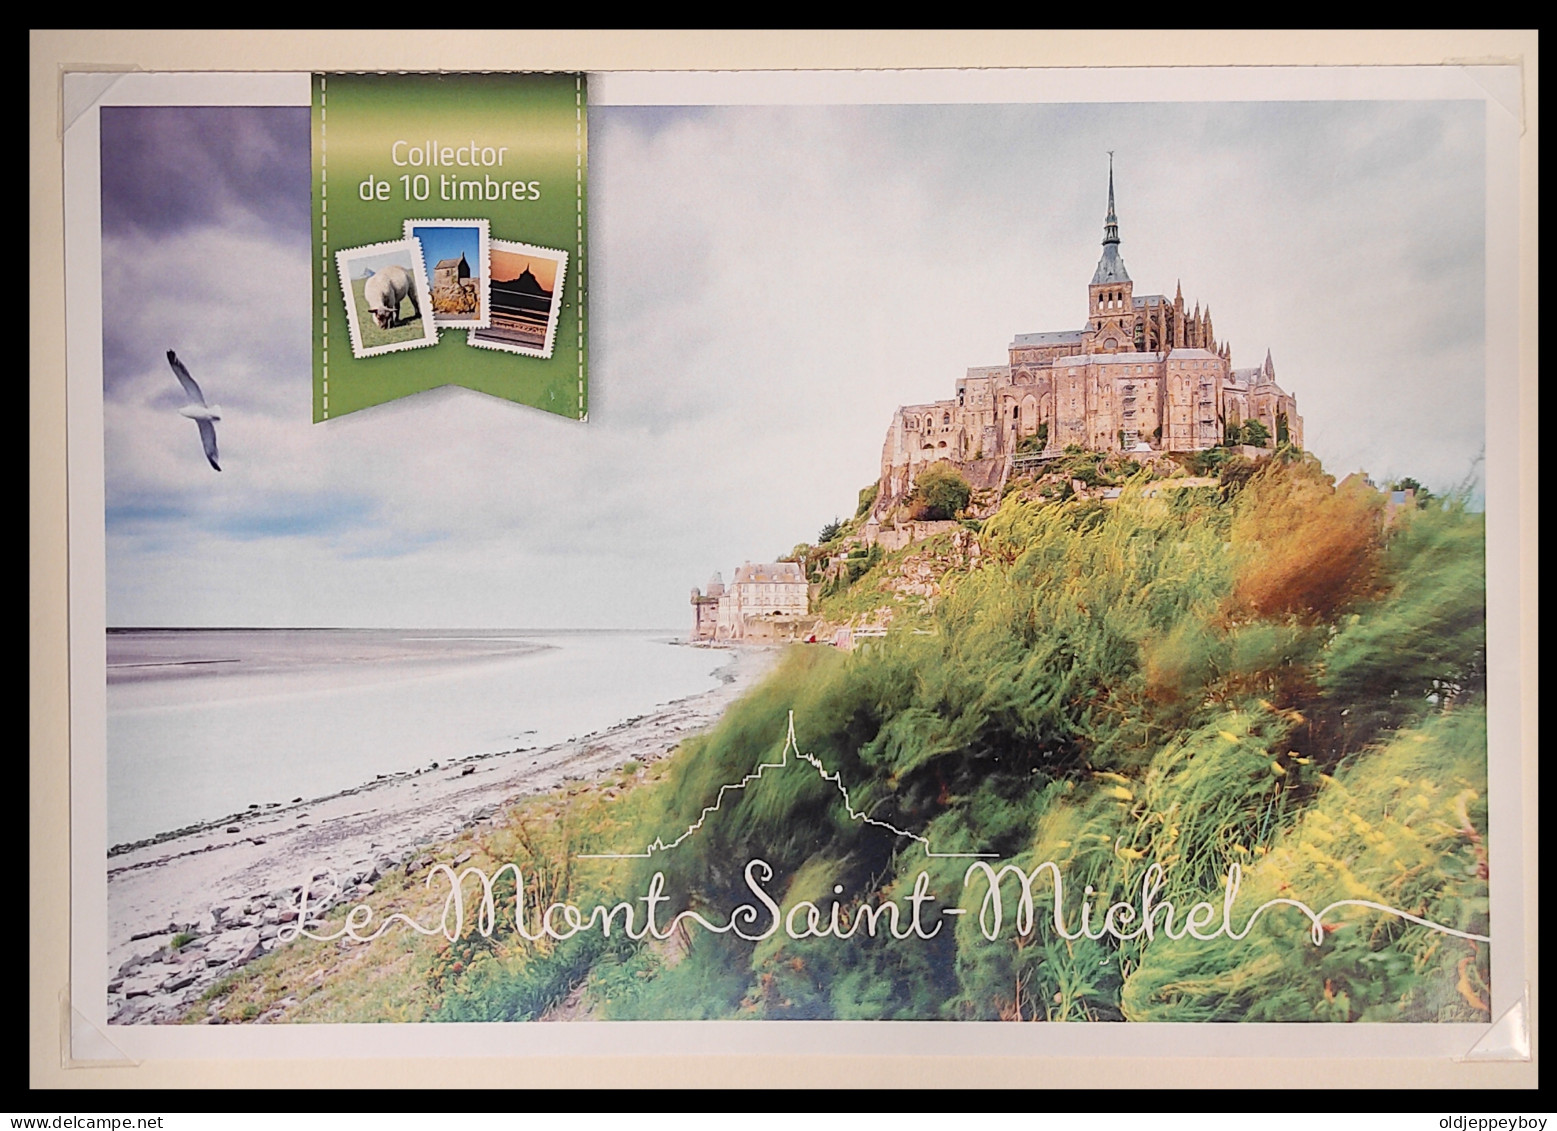 France-Collector MTAM 225 -2013- "Le Mont Saint Michel" Neuf Scellé - Autoadhesif - Autocollant Page Explicative - Collectors